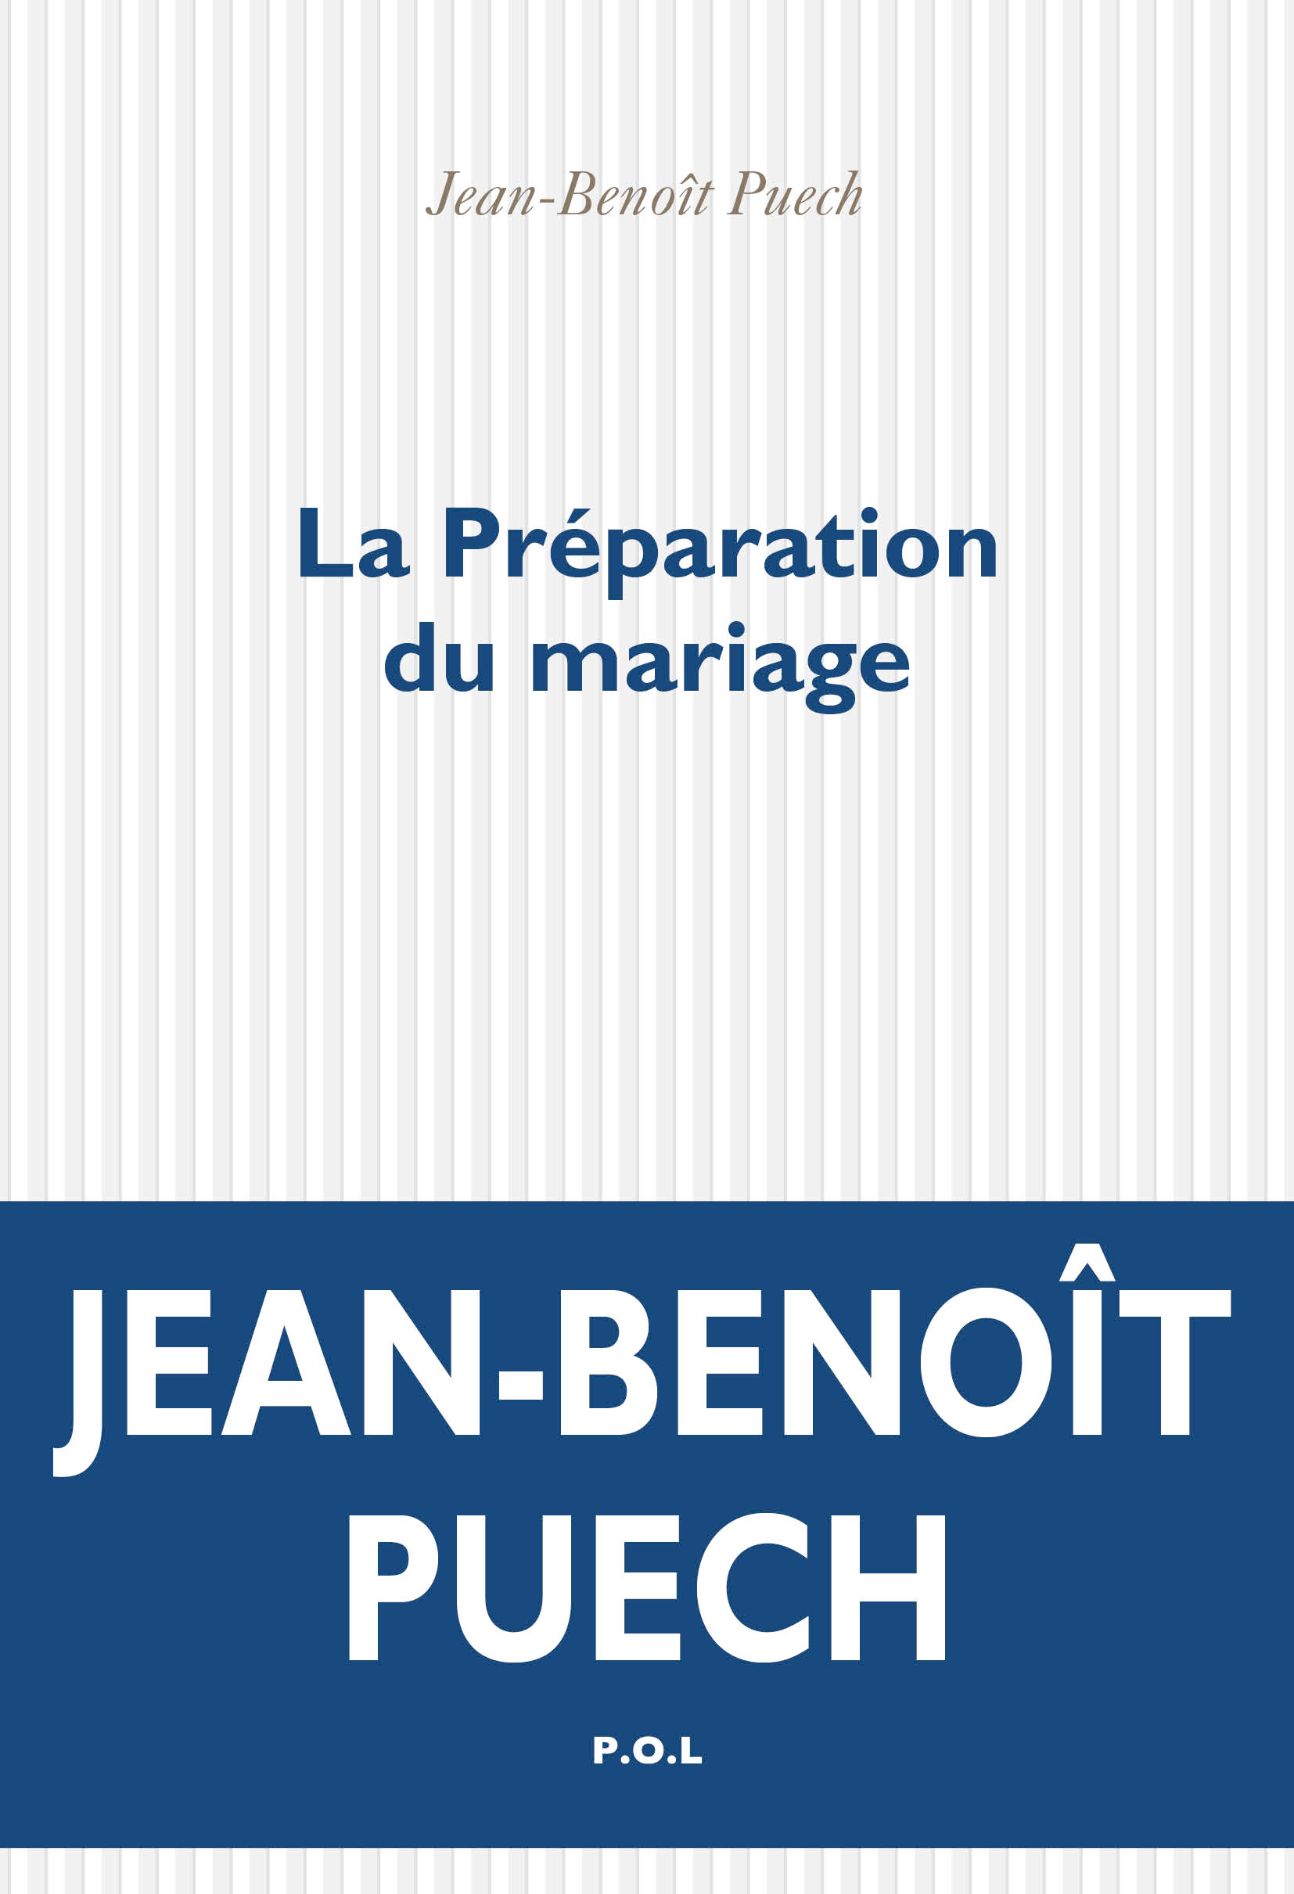 Jean-Benoît Puech, La Préparation du mariage. Souvenirs intimes de Clément Coupèges (1974-1994)